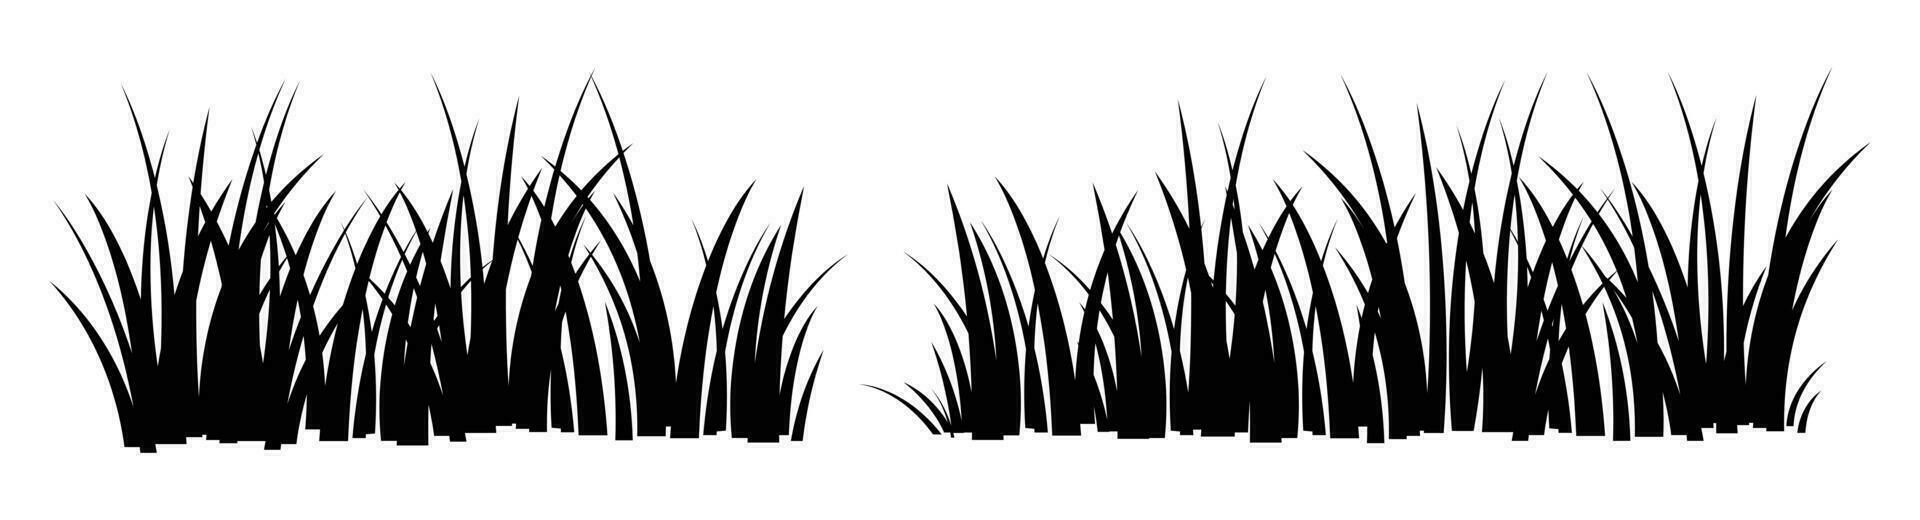 tecknad serie silhuett gräs löv samling vektor illustration isolerat på vit